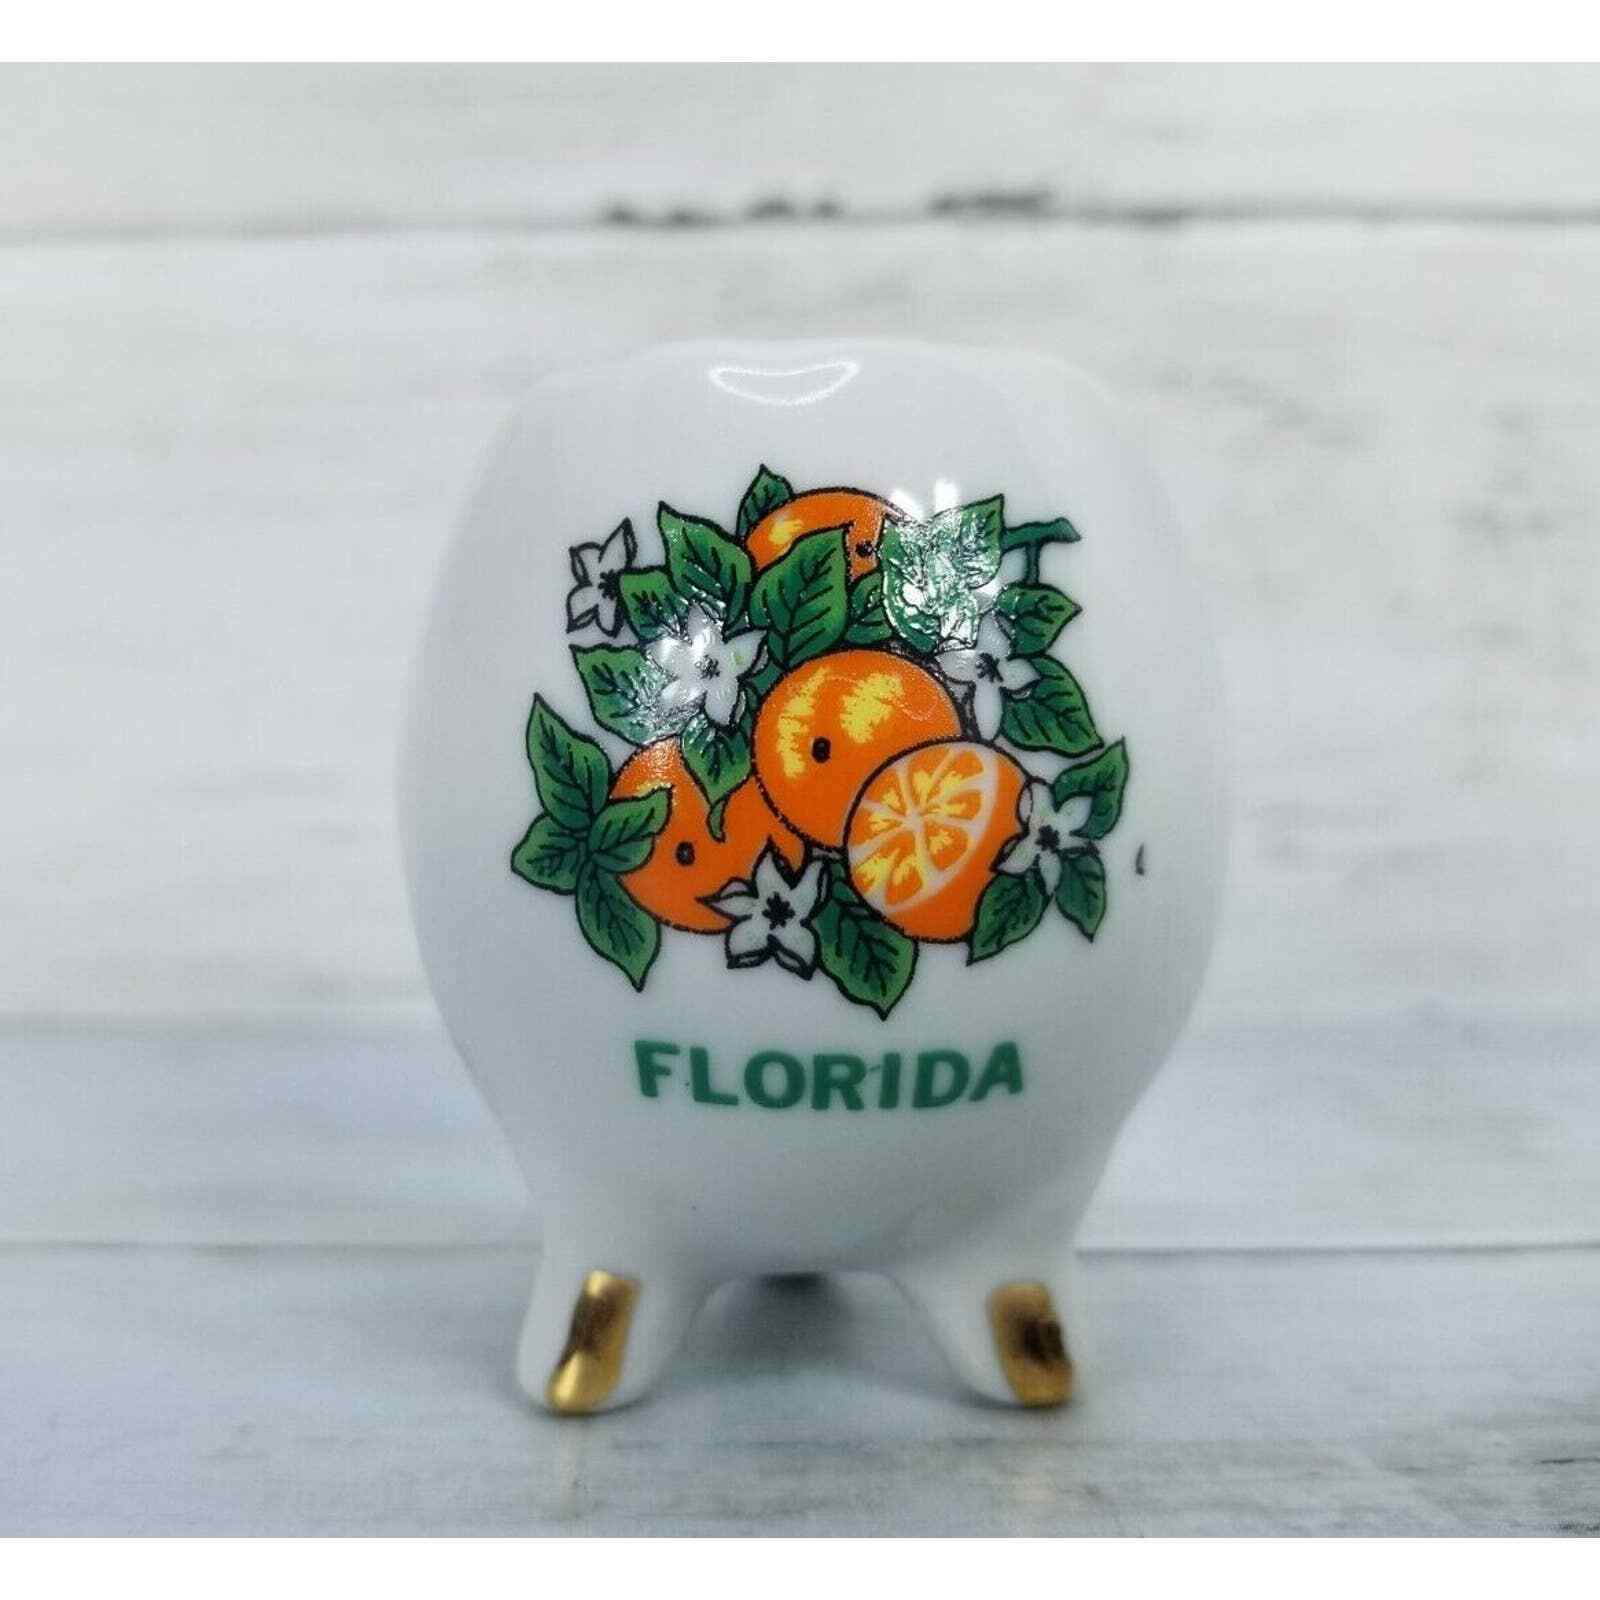 Vintage Florida Souvenir Egg Cup with orange blossoms